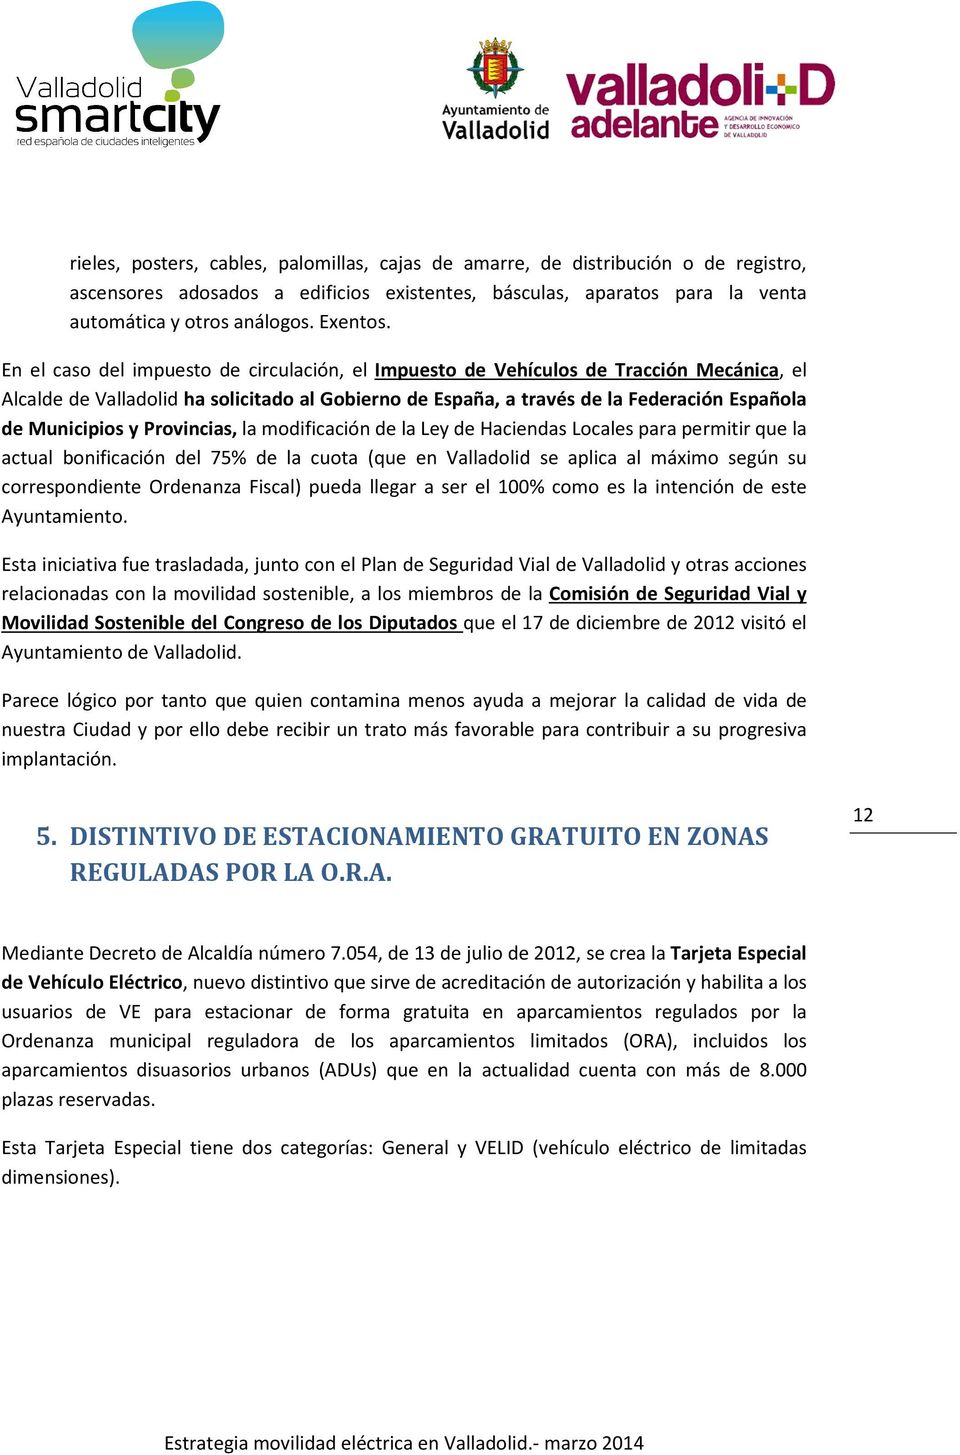 Provincias, la modificación de la Ley de Haciendas Locales para permitir que la actual bonificación del 75% de la cuota (que en Valladolid se aplica al máximo según su correspondiente Ordenanza